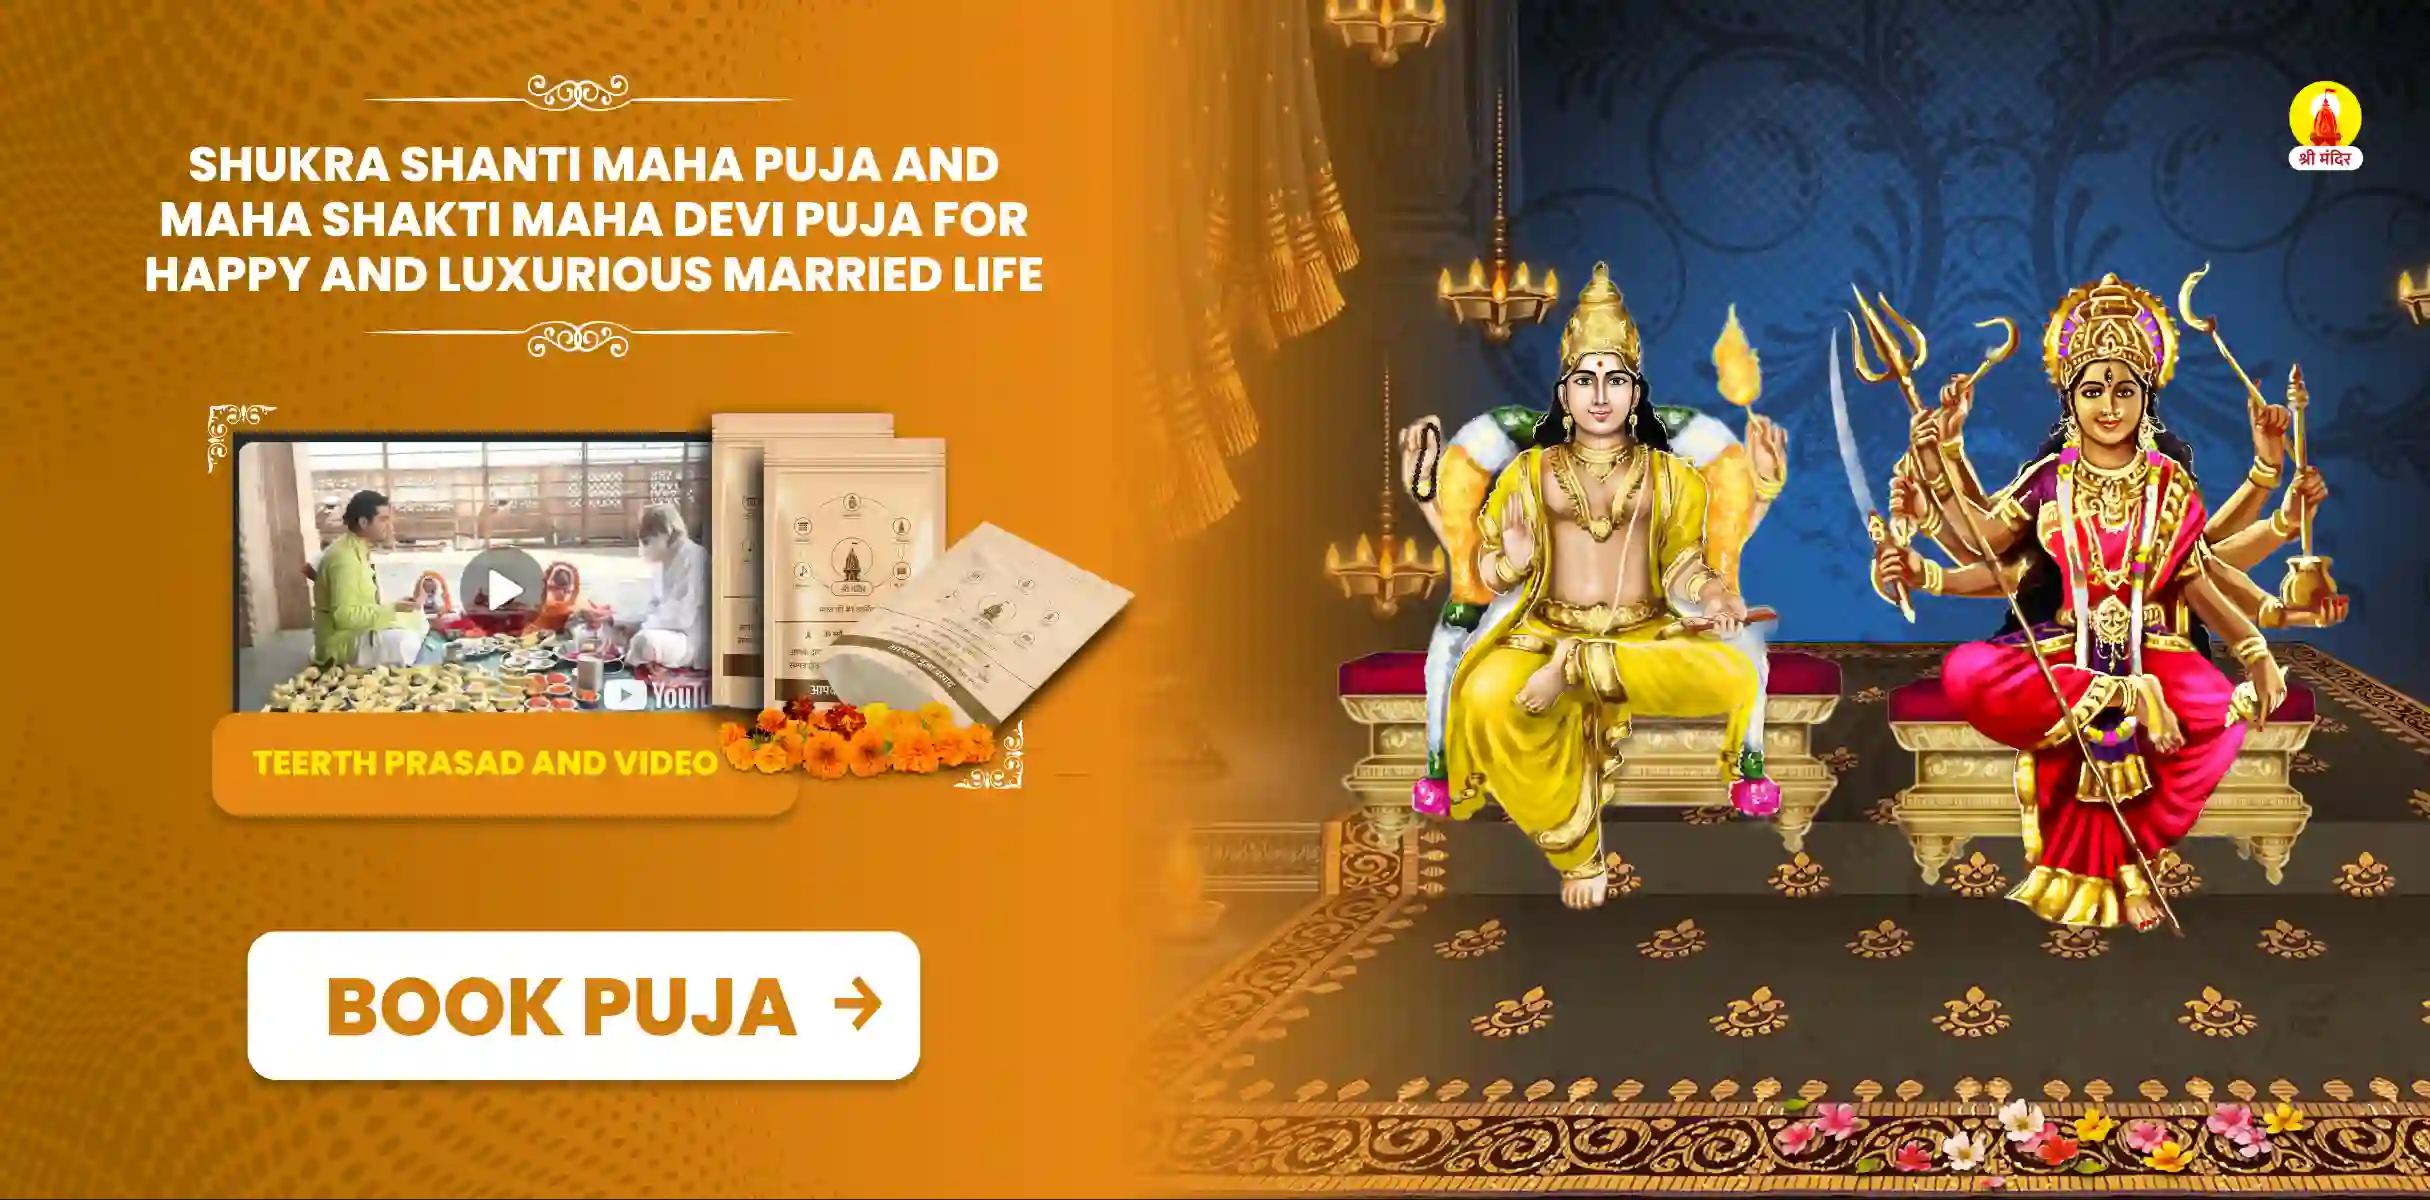 Shukra Shanti Maha Puja and Maha Shakti Maha Devi Puja for Happy and luxurious married life